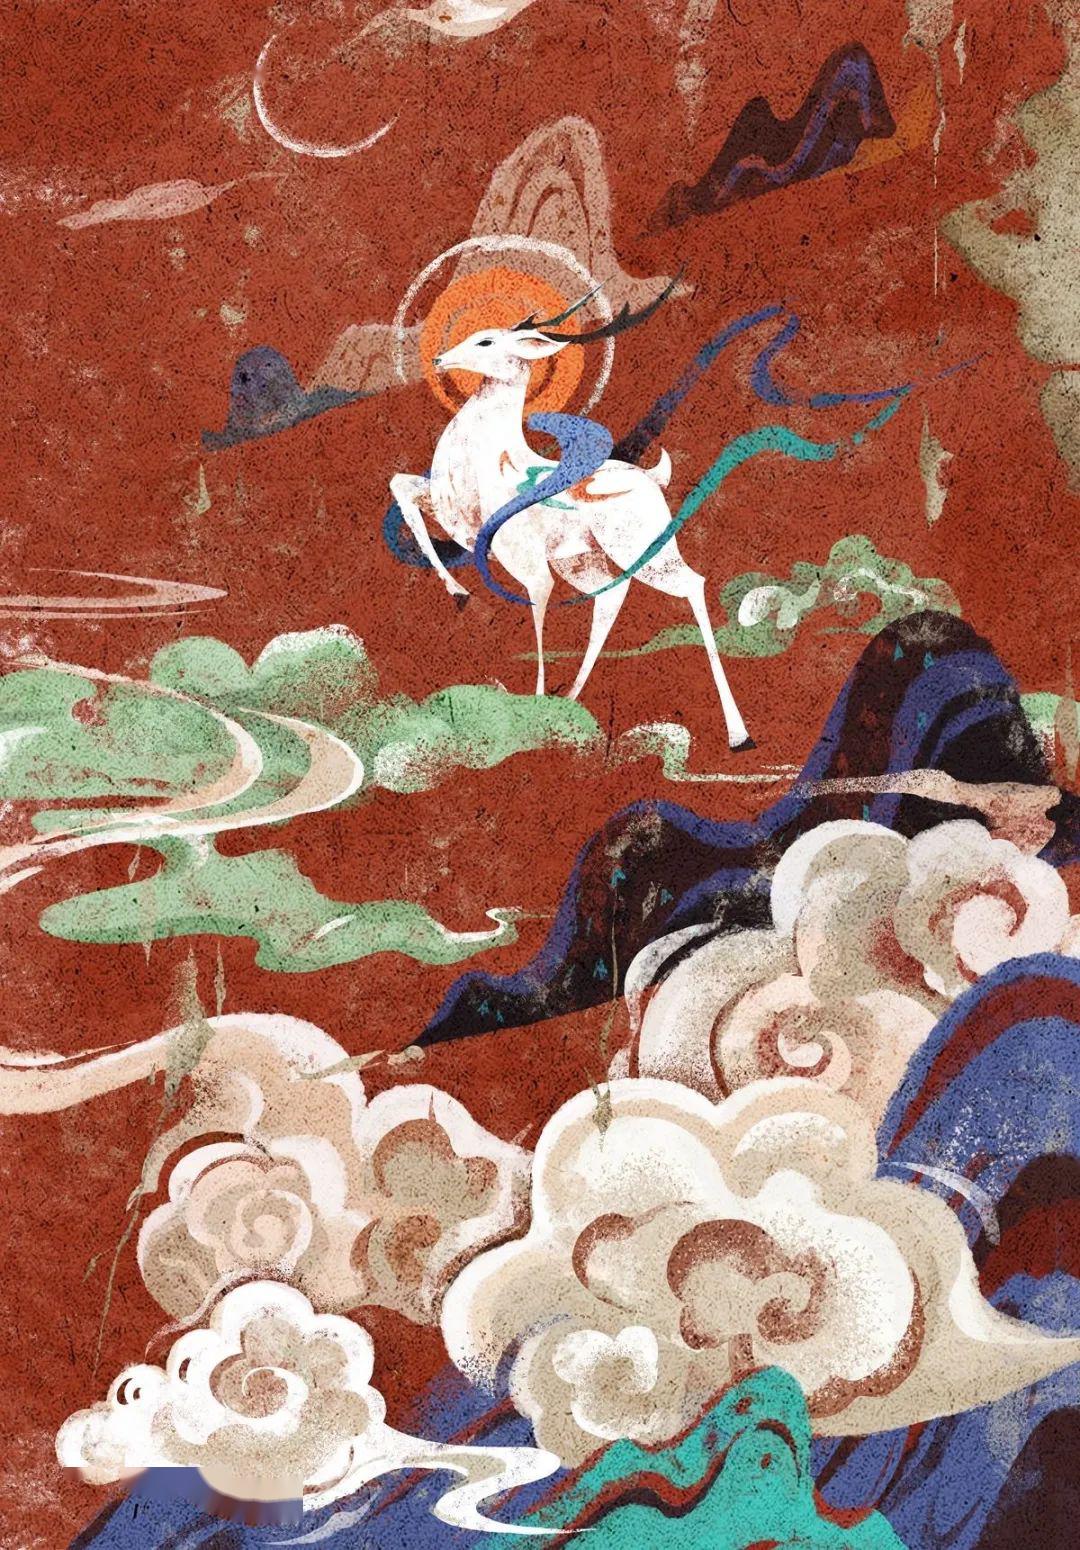 敦煌飞天壁画中的云纹三国两晋南北朝时期,在丝绸之路开通和佛教思想